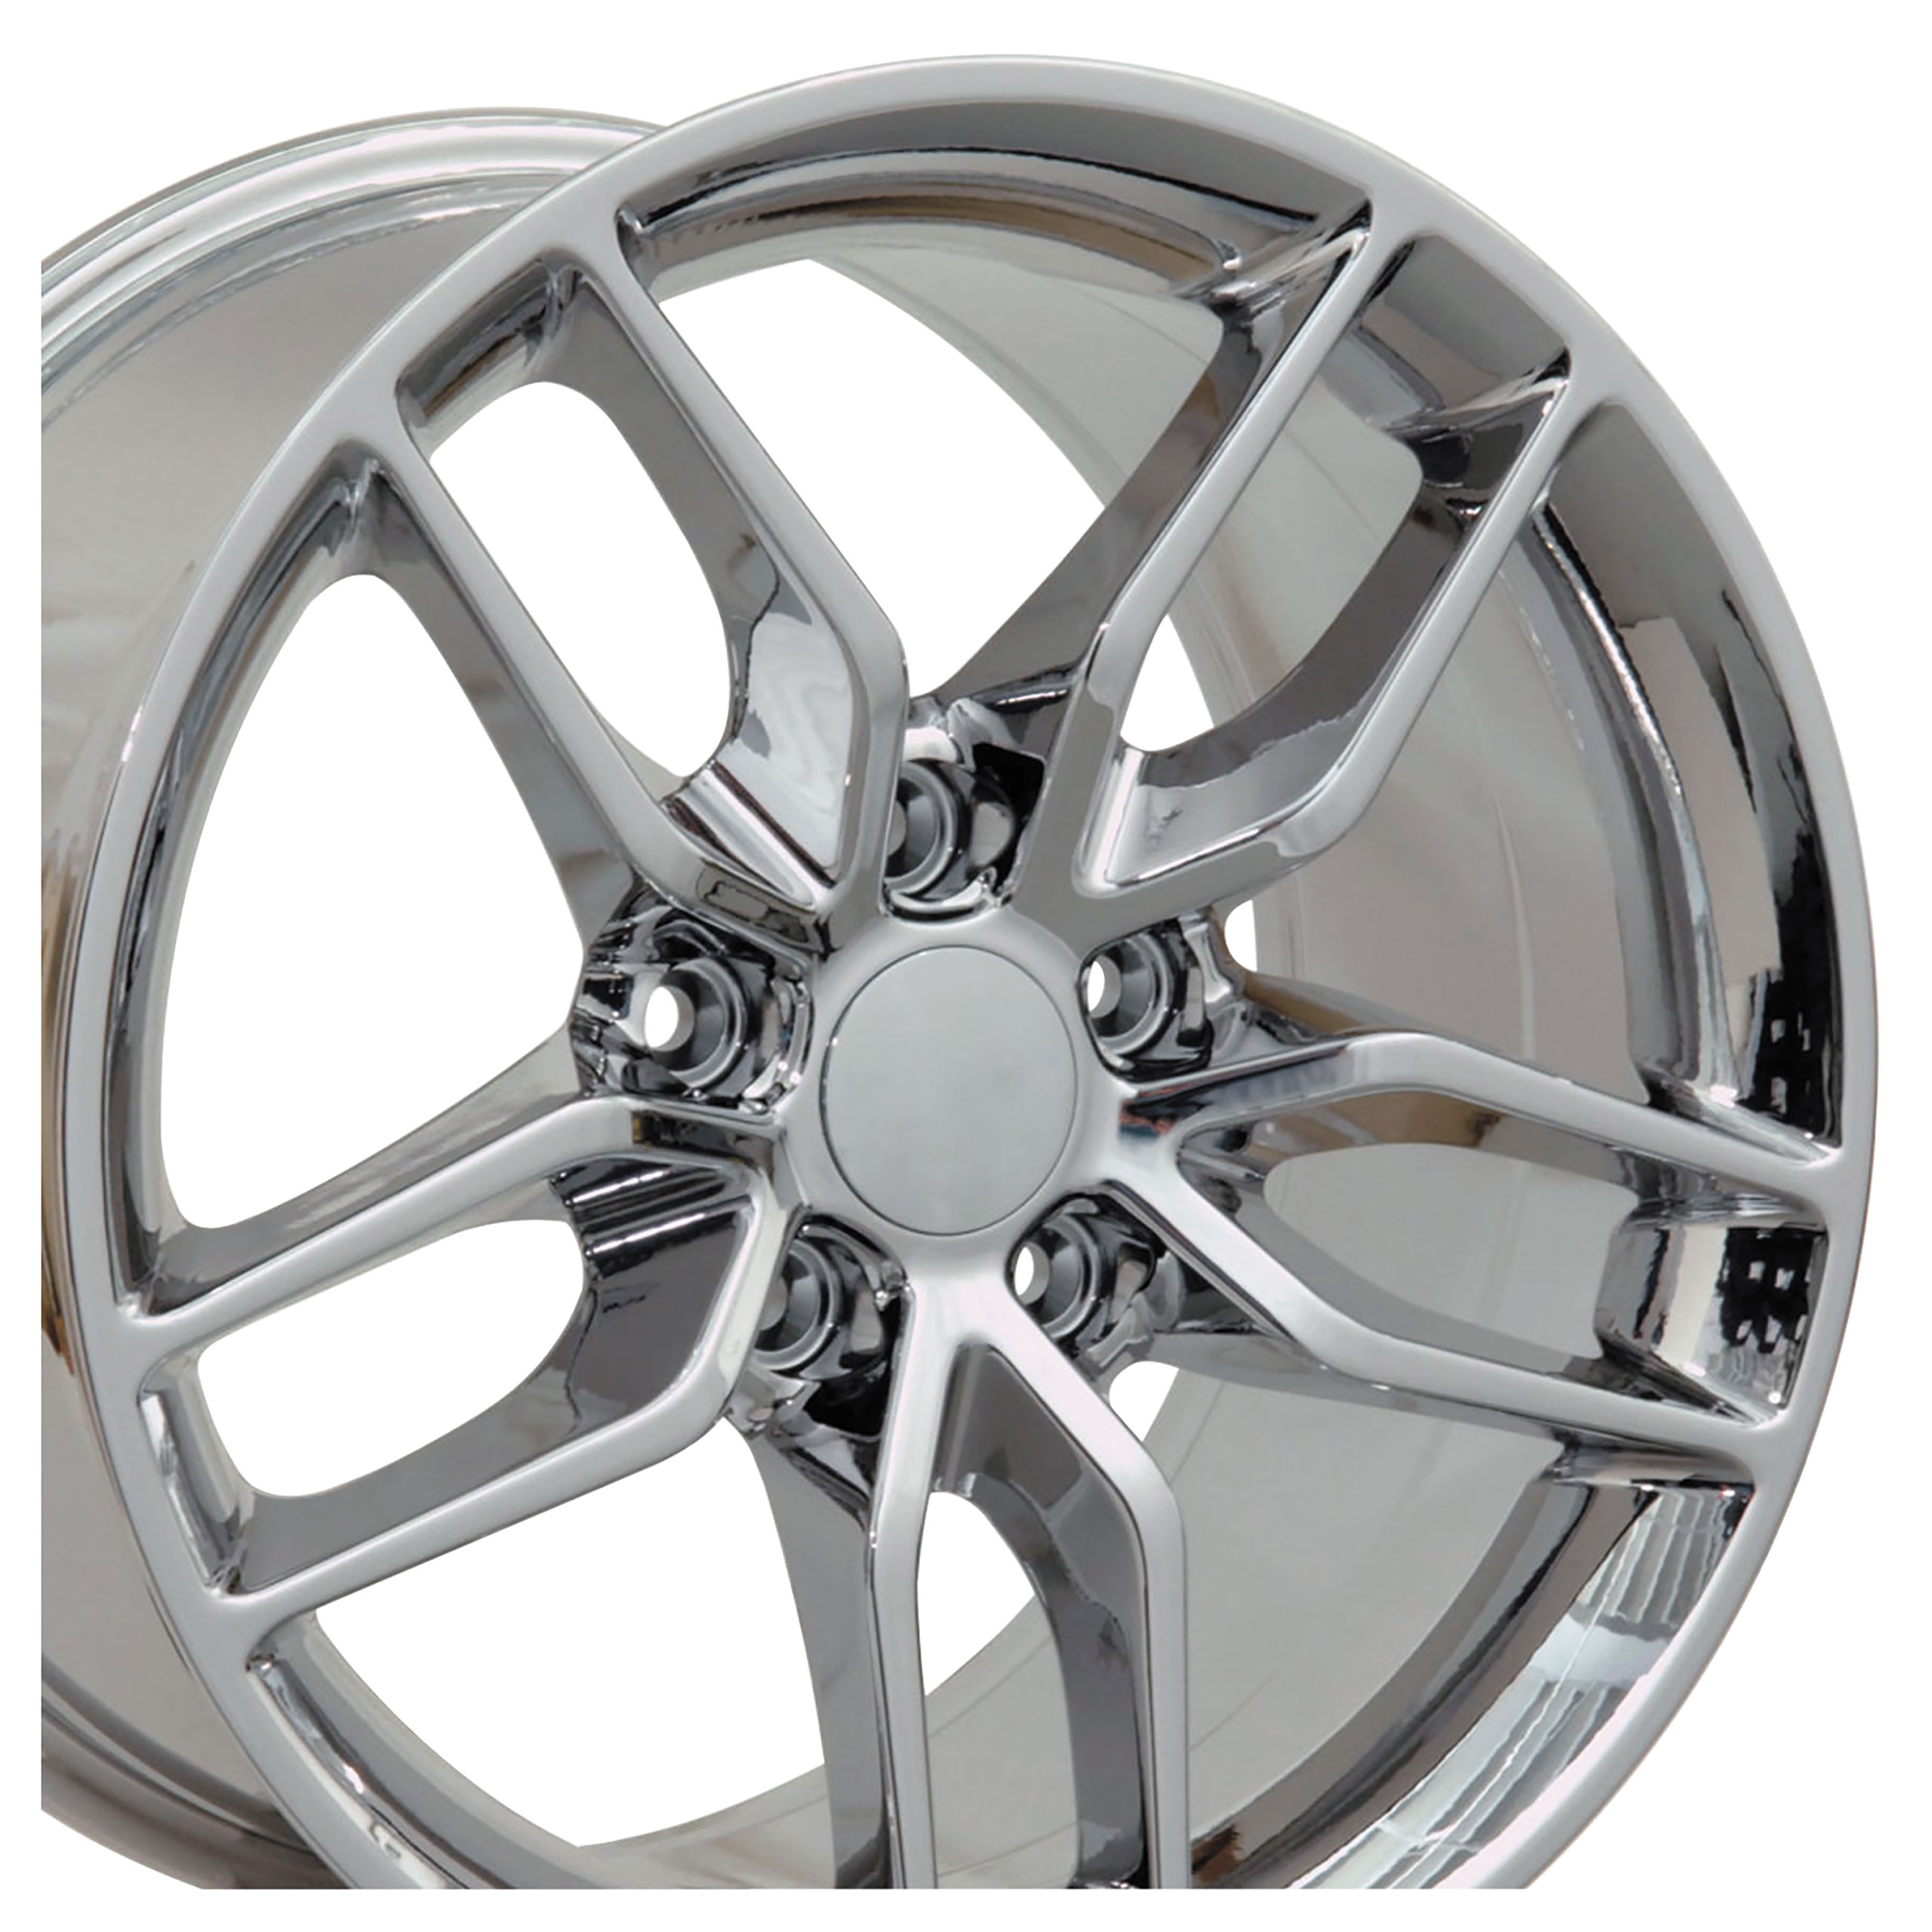 C7 Z51 Style Chrome Wheel 18x85 56mm Offset For 2014-2019 Corvette